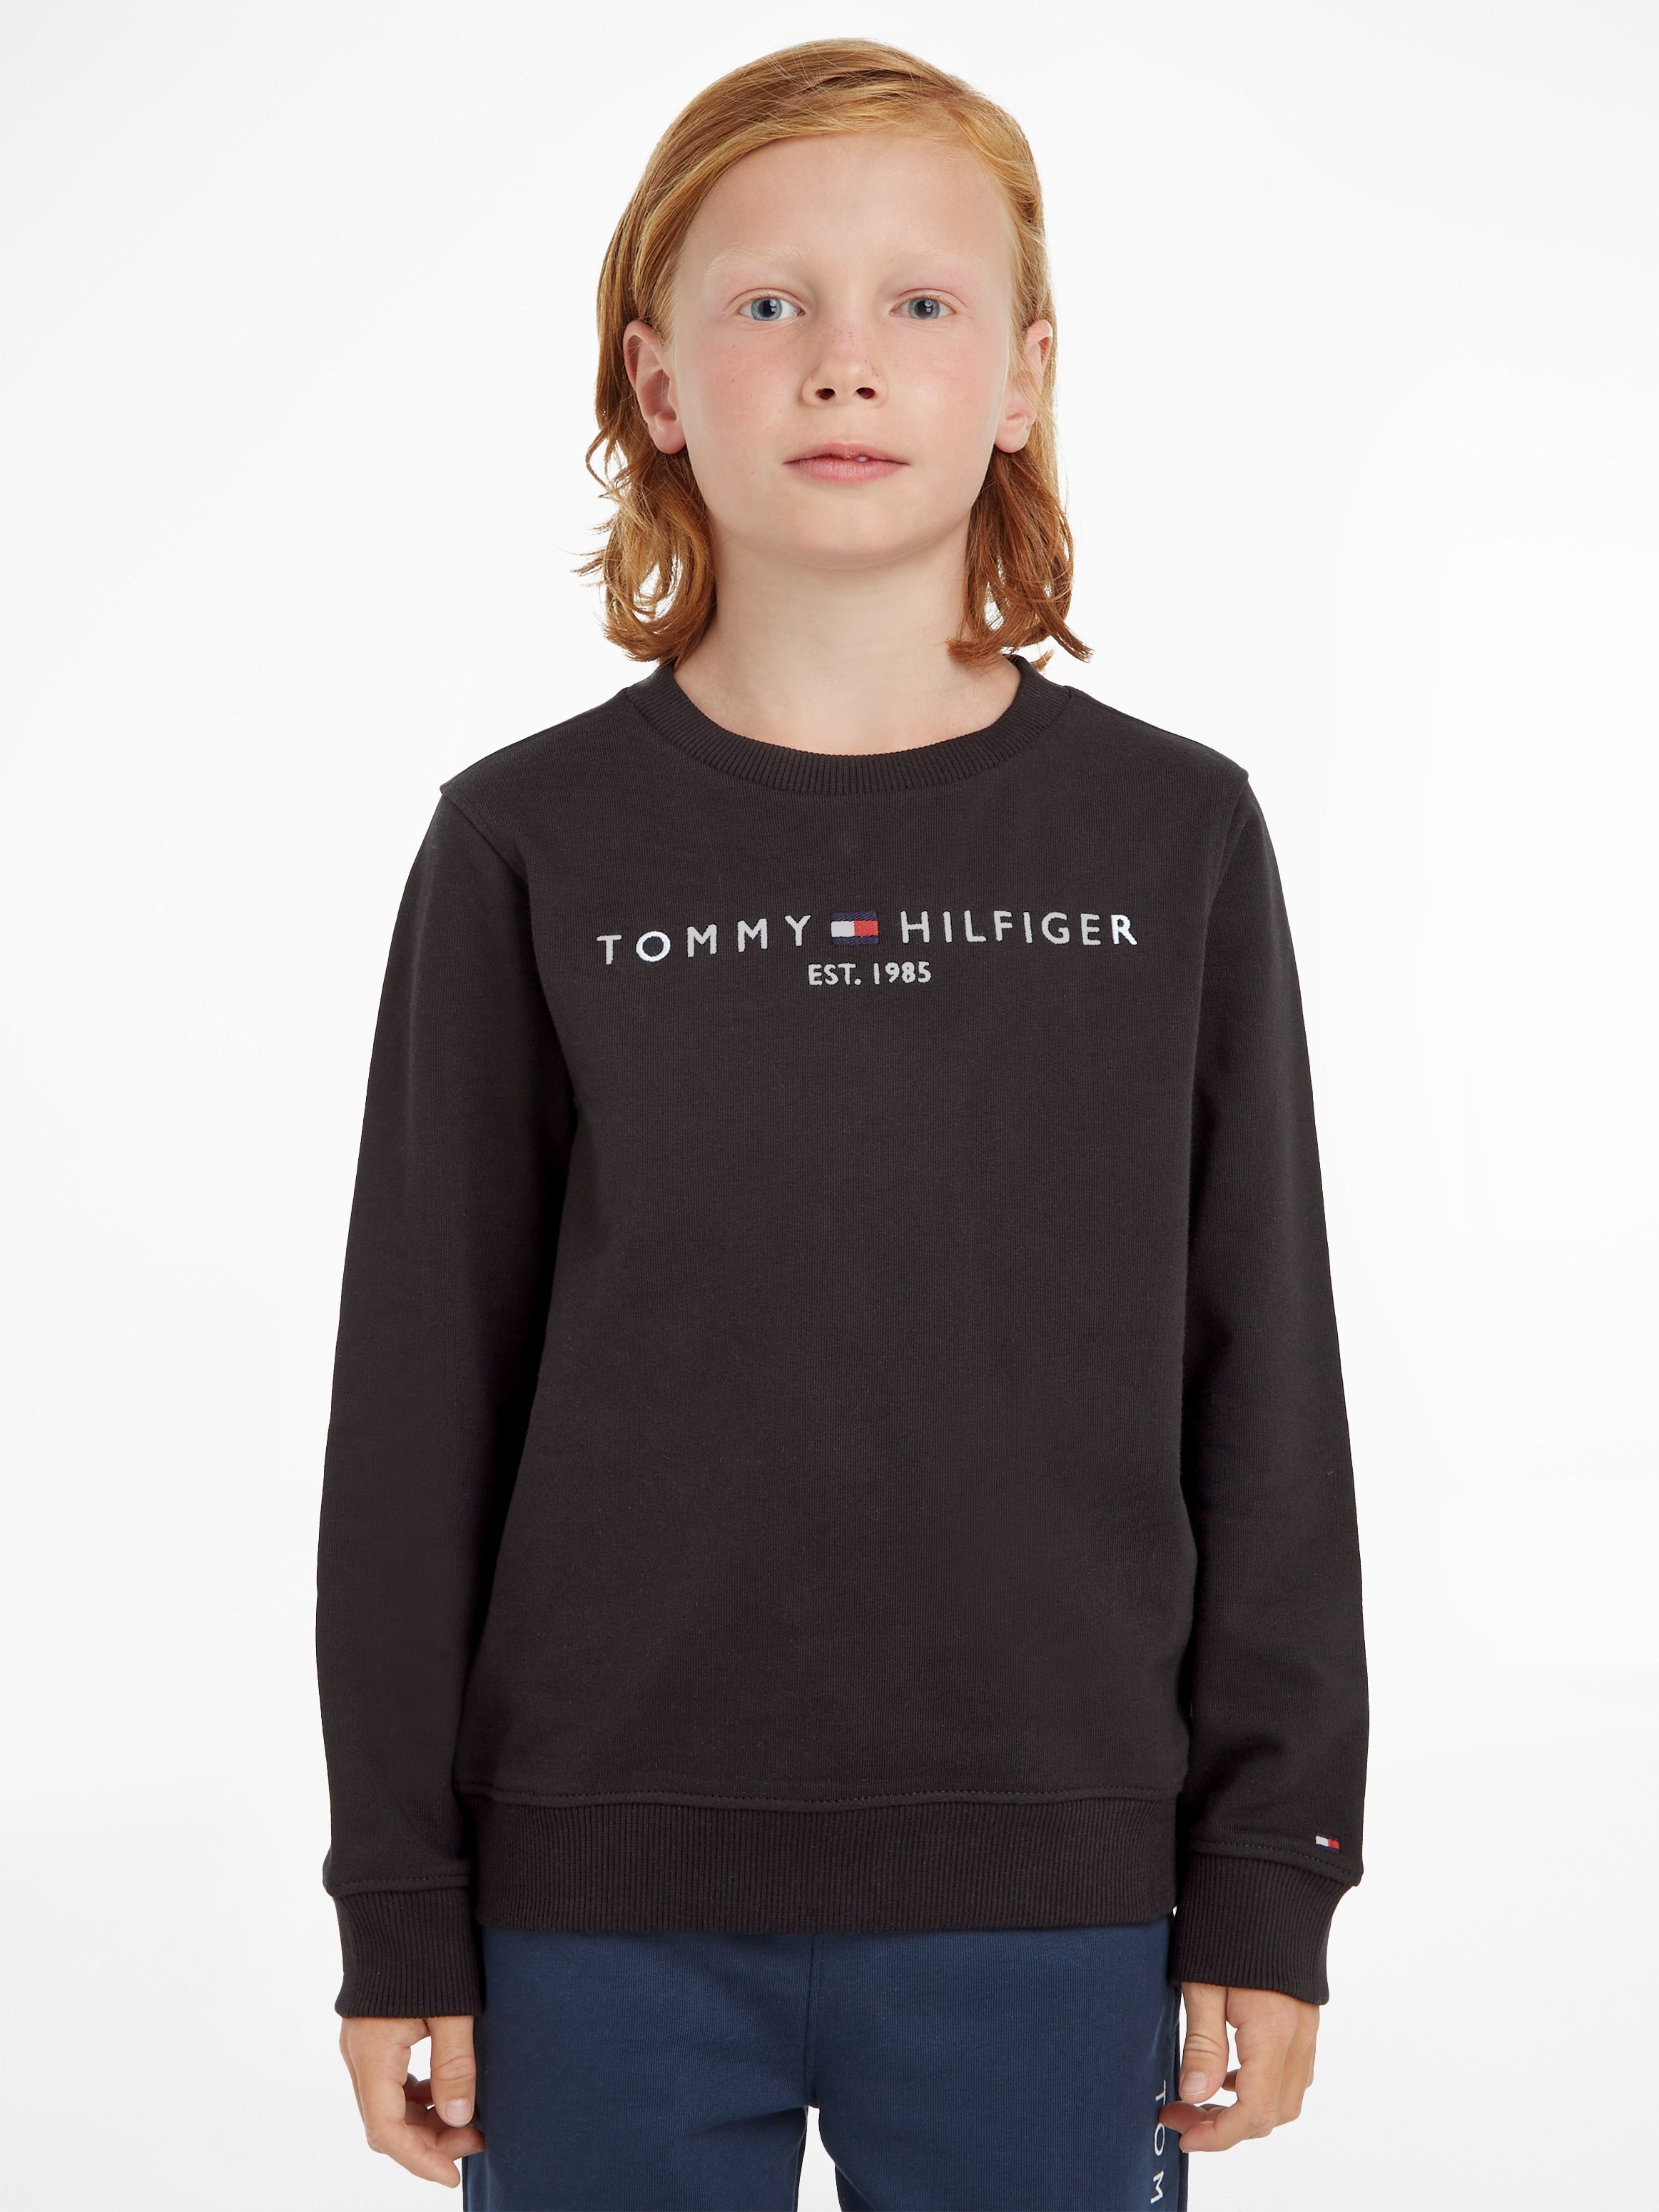 Tommy Hilfiger Sweatshirt im OTTO Online Shop